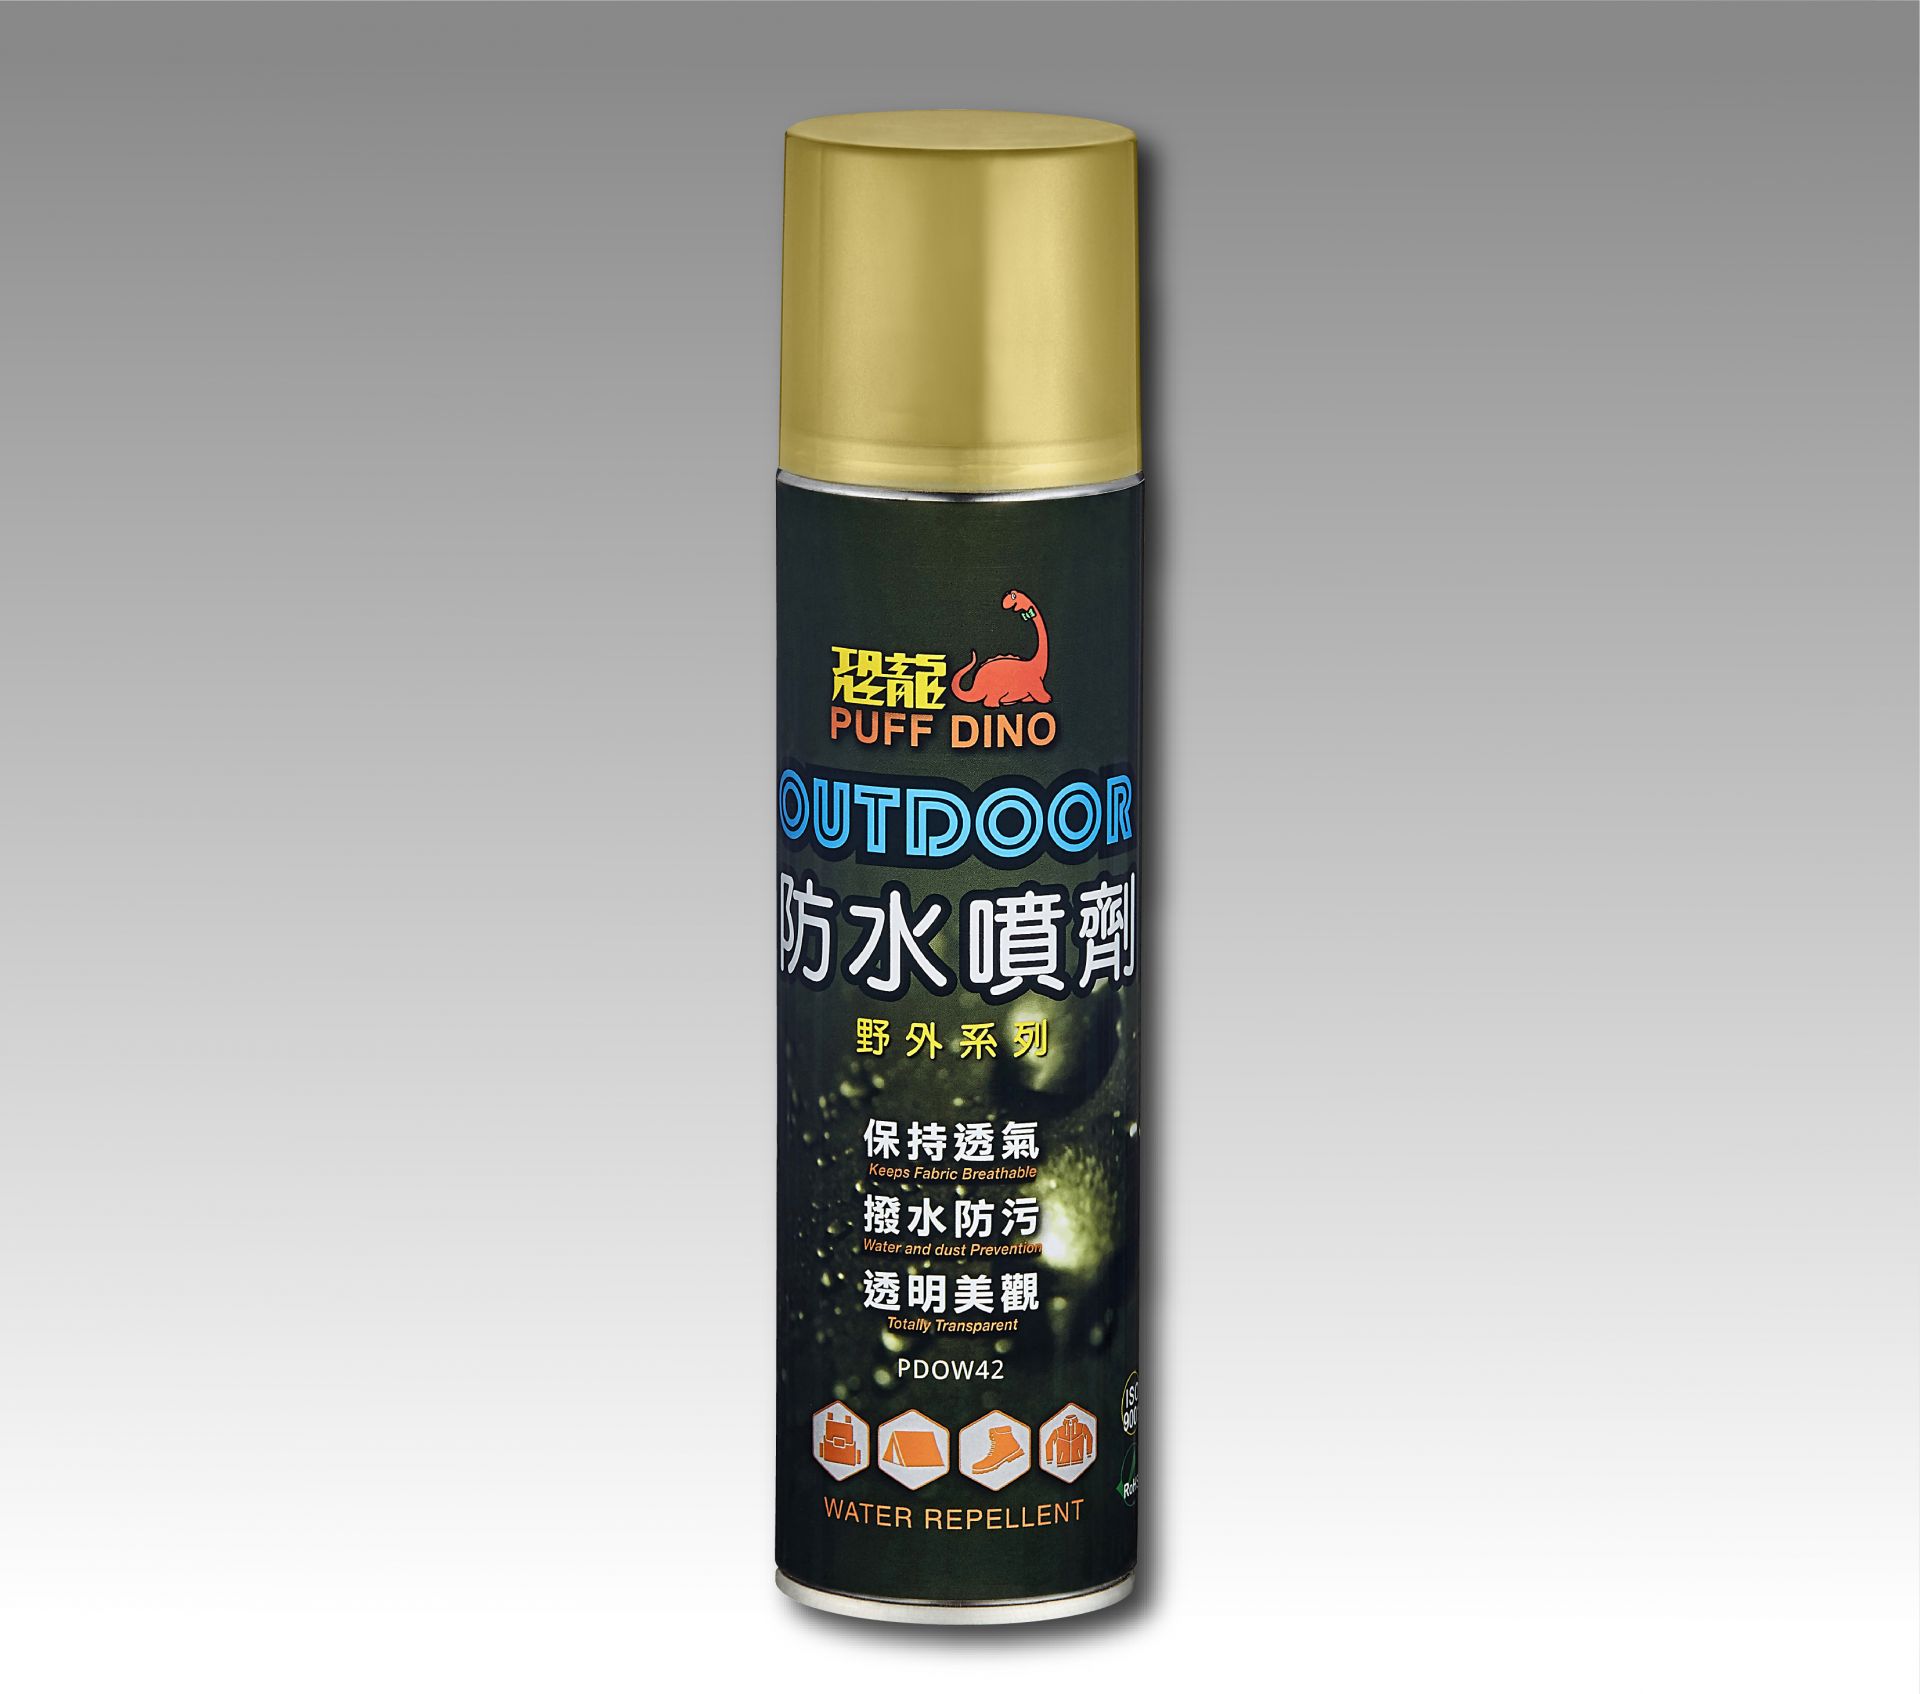 PUFF DINO Outdoor Water Repellent - Outdoor Water Repellent-420ml